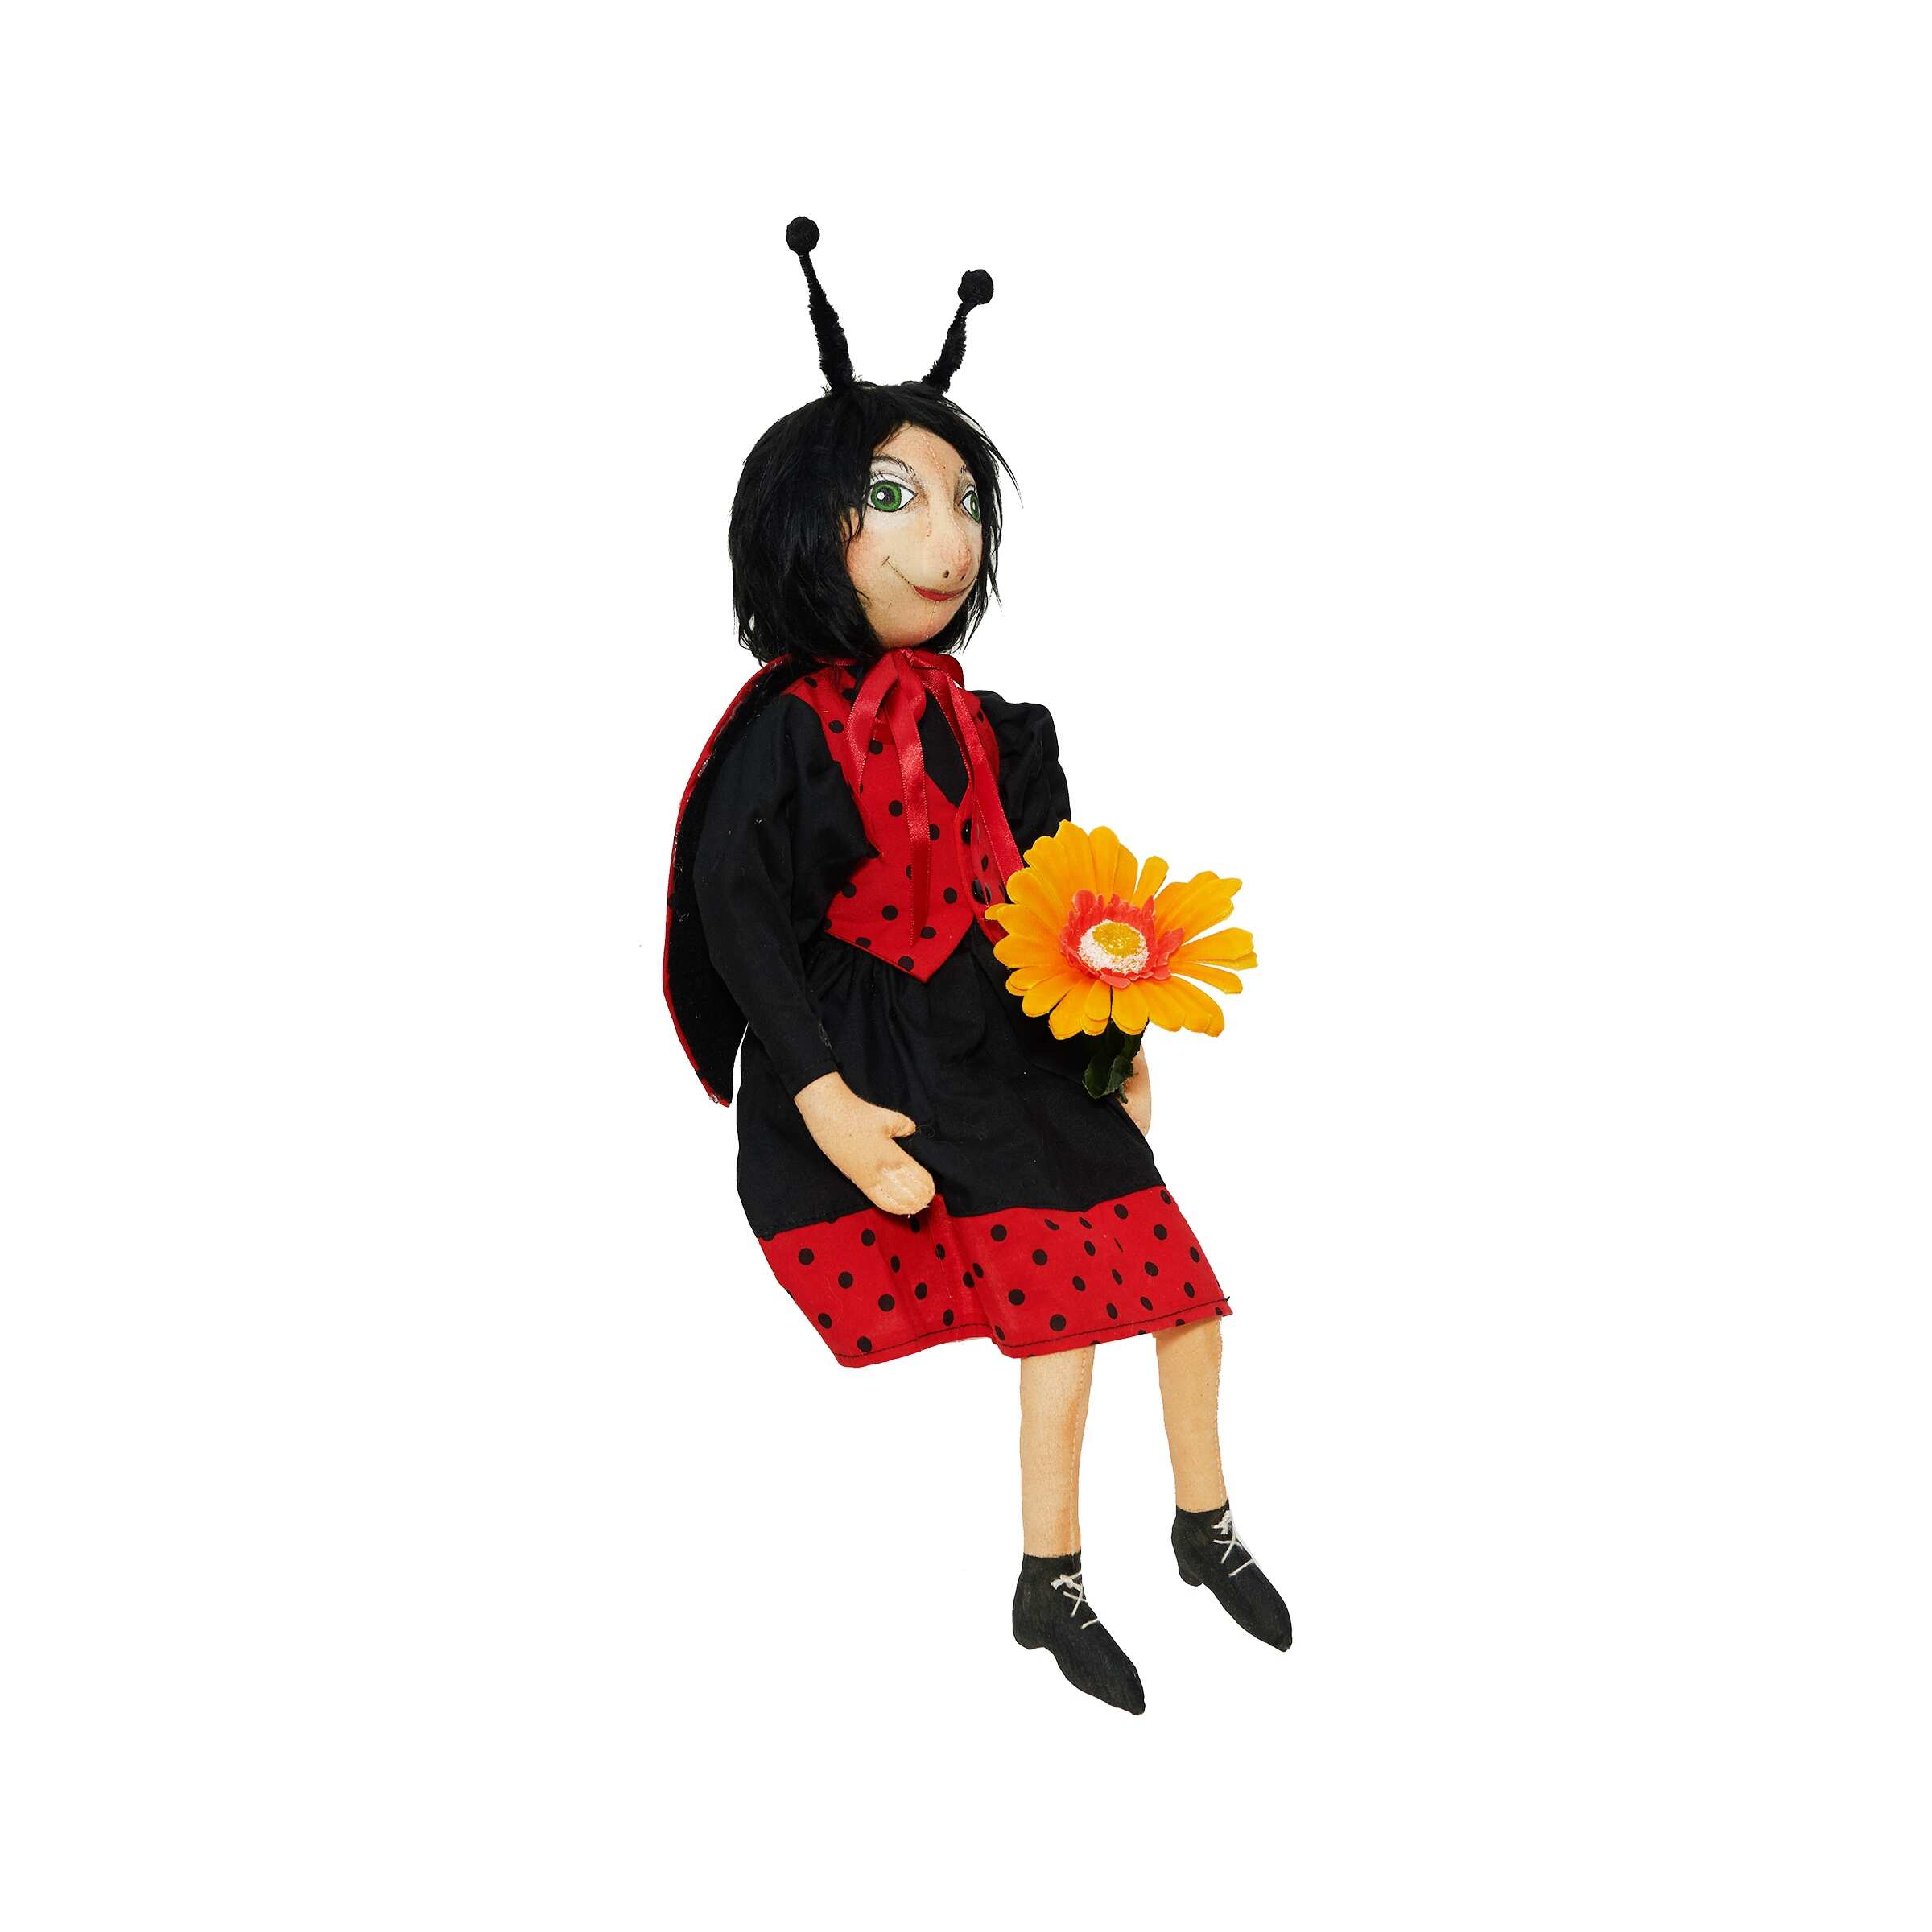 Lucinda Ladybug Figurine - 7" x 3" x 22"